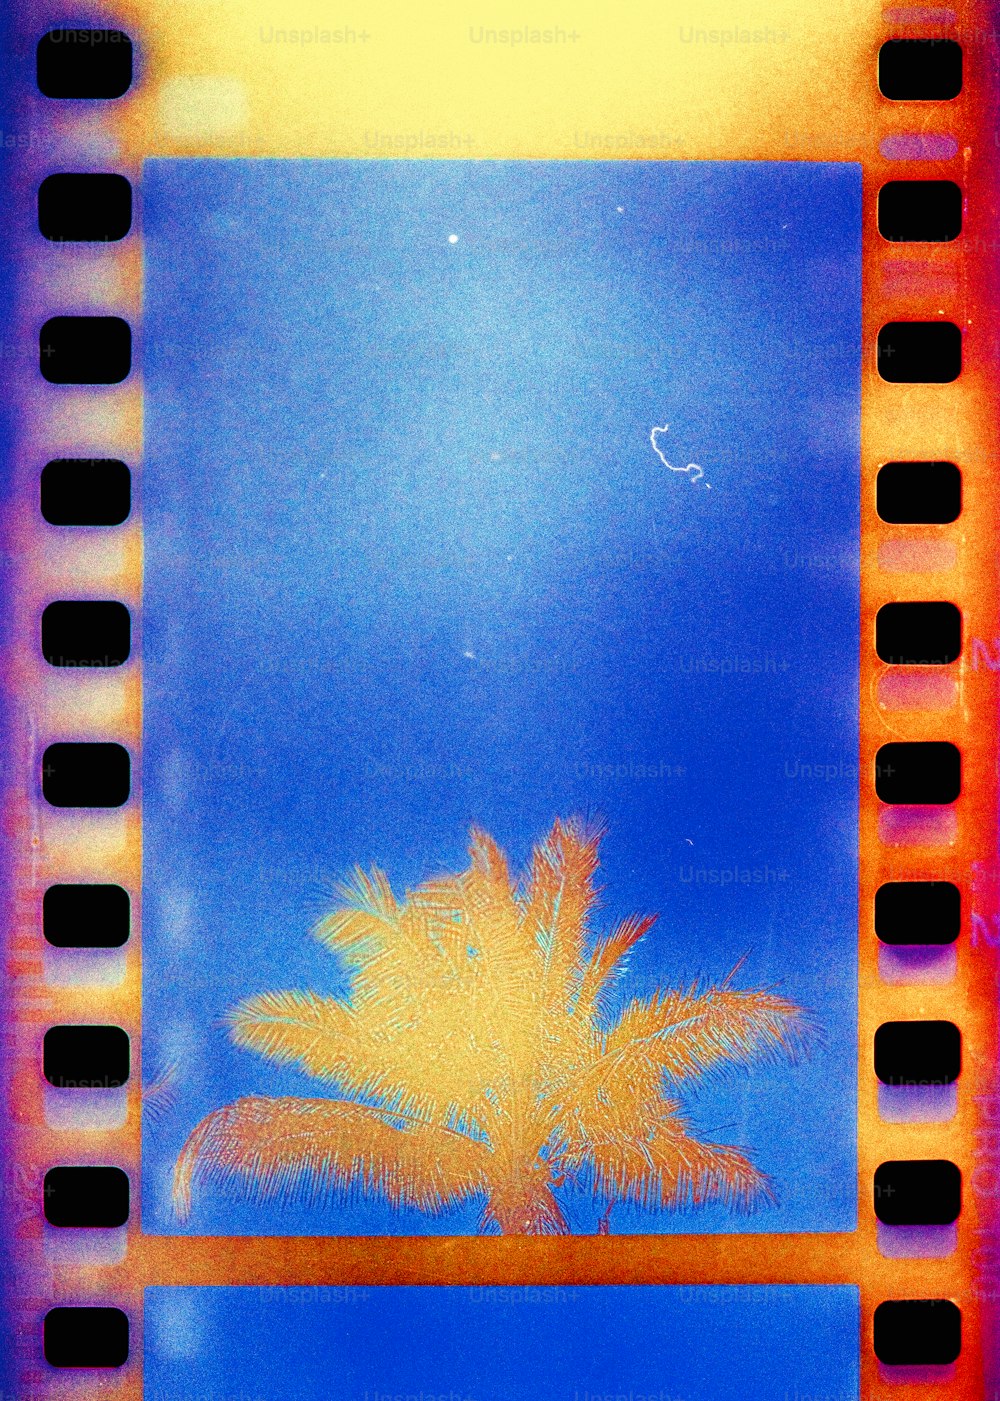 une photo d’un palmier prise à travers une bande de film